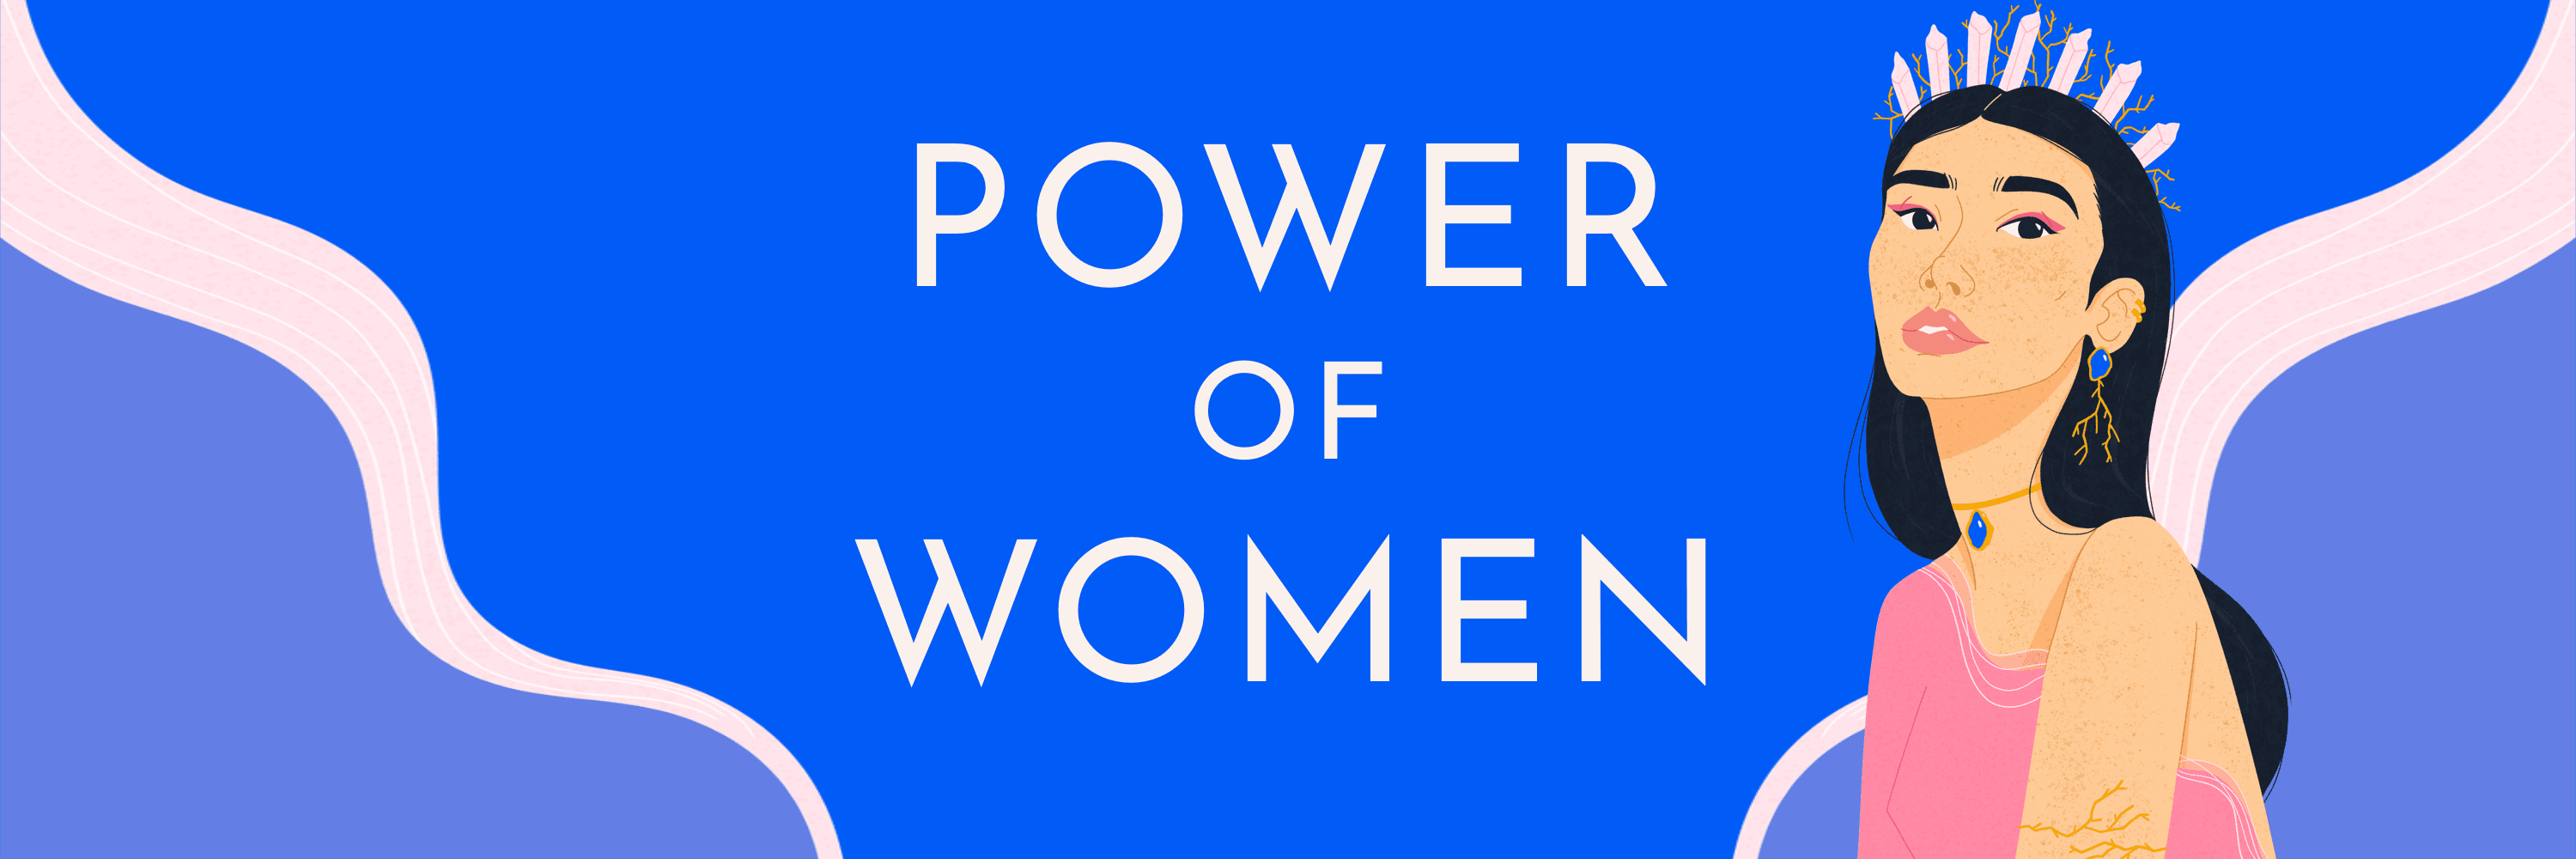 PowerOfWomenNFT2 banner